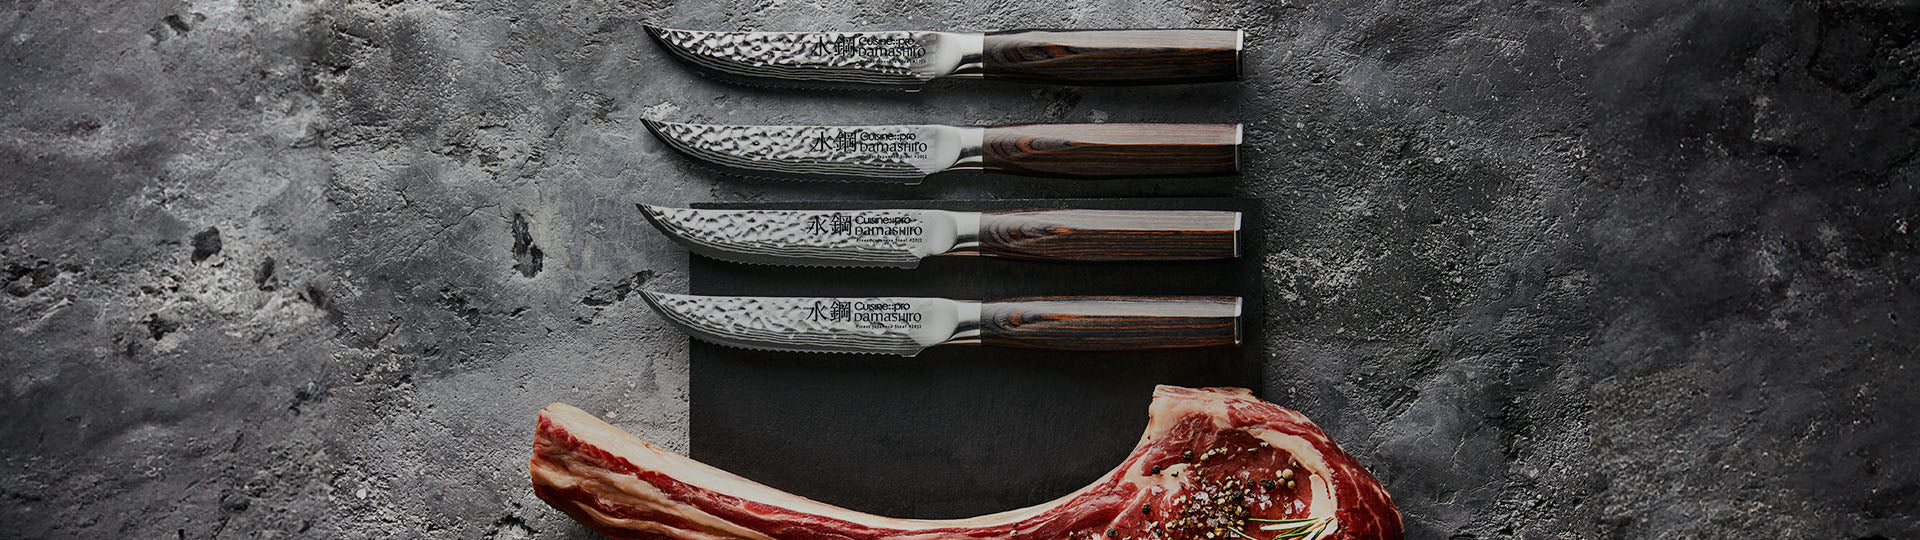 Steak Knife Sets